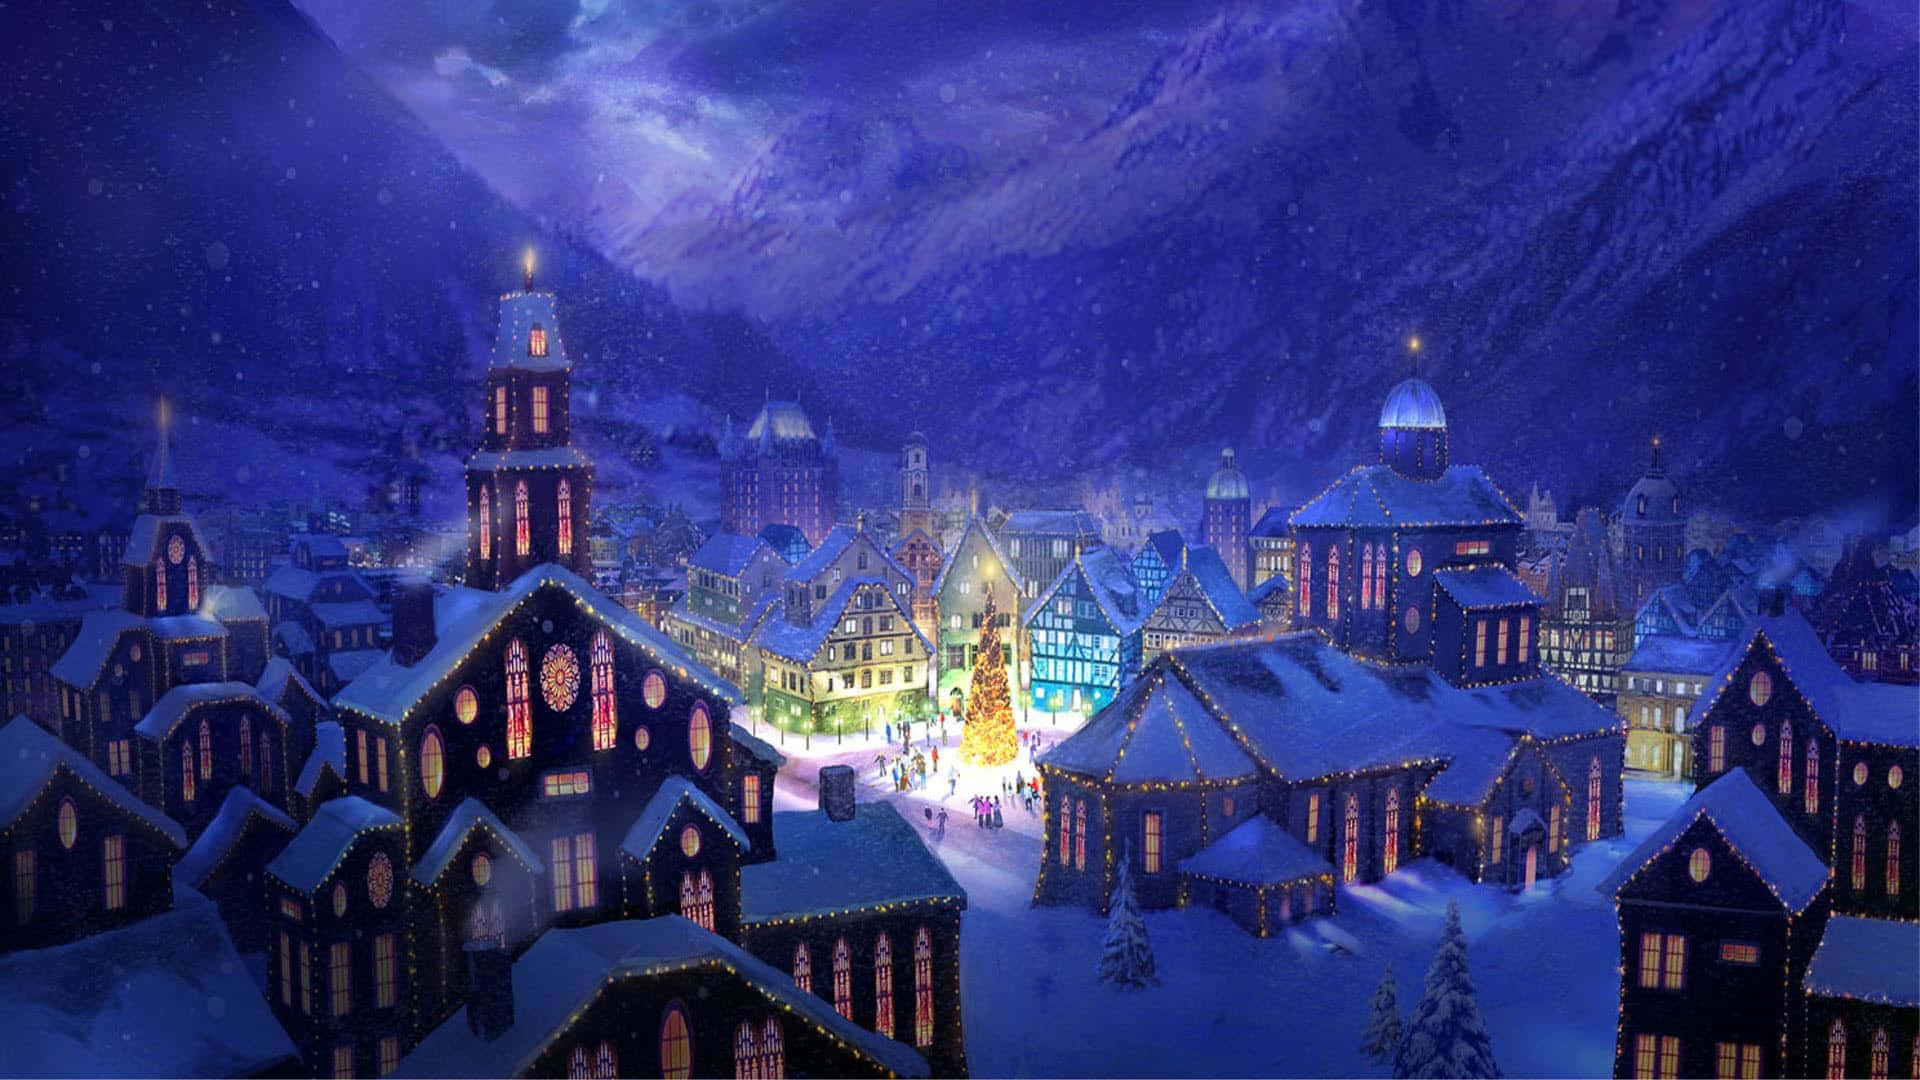 Fejrer ferierne med en tur gennem et magisk julelandsby. Wallpaper